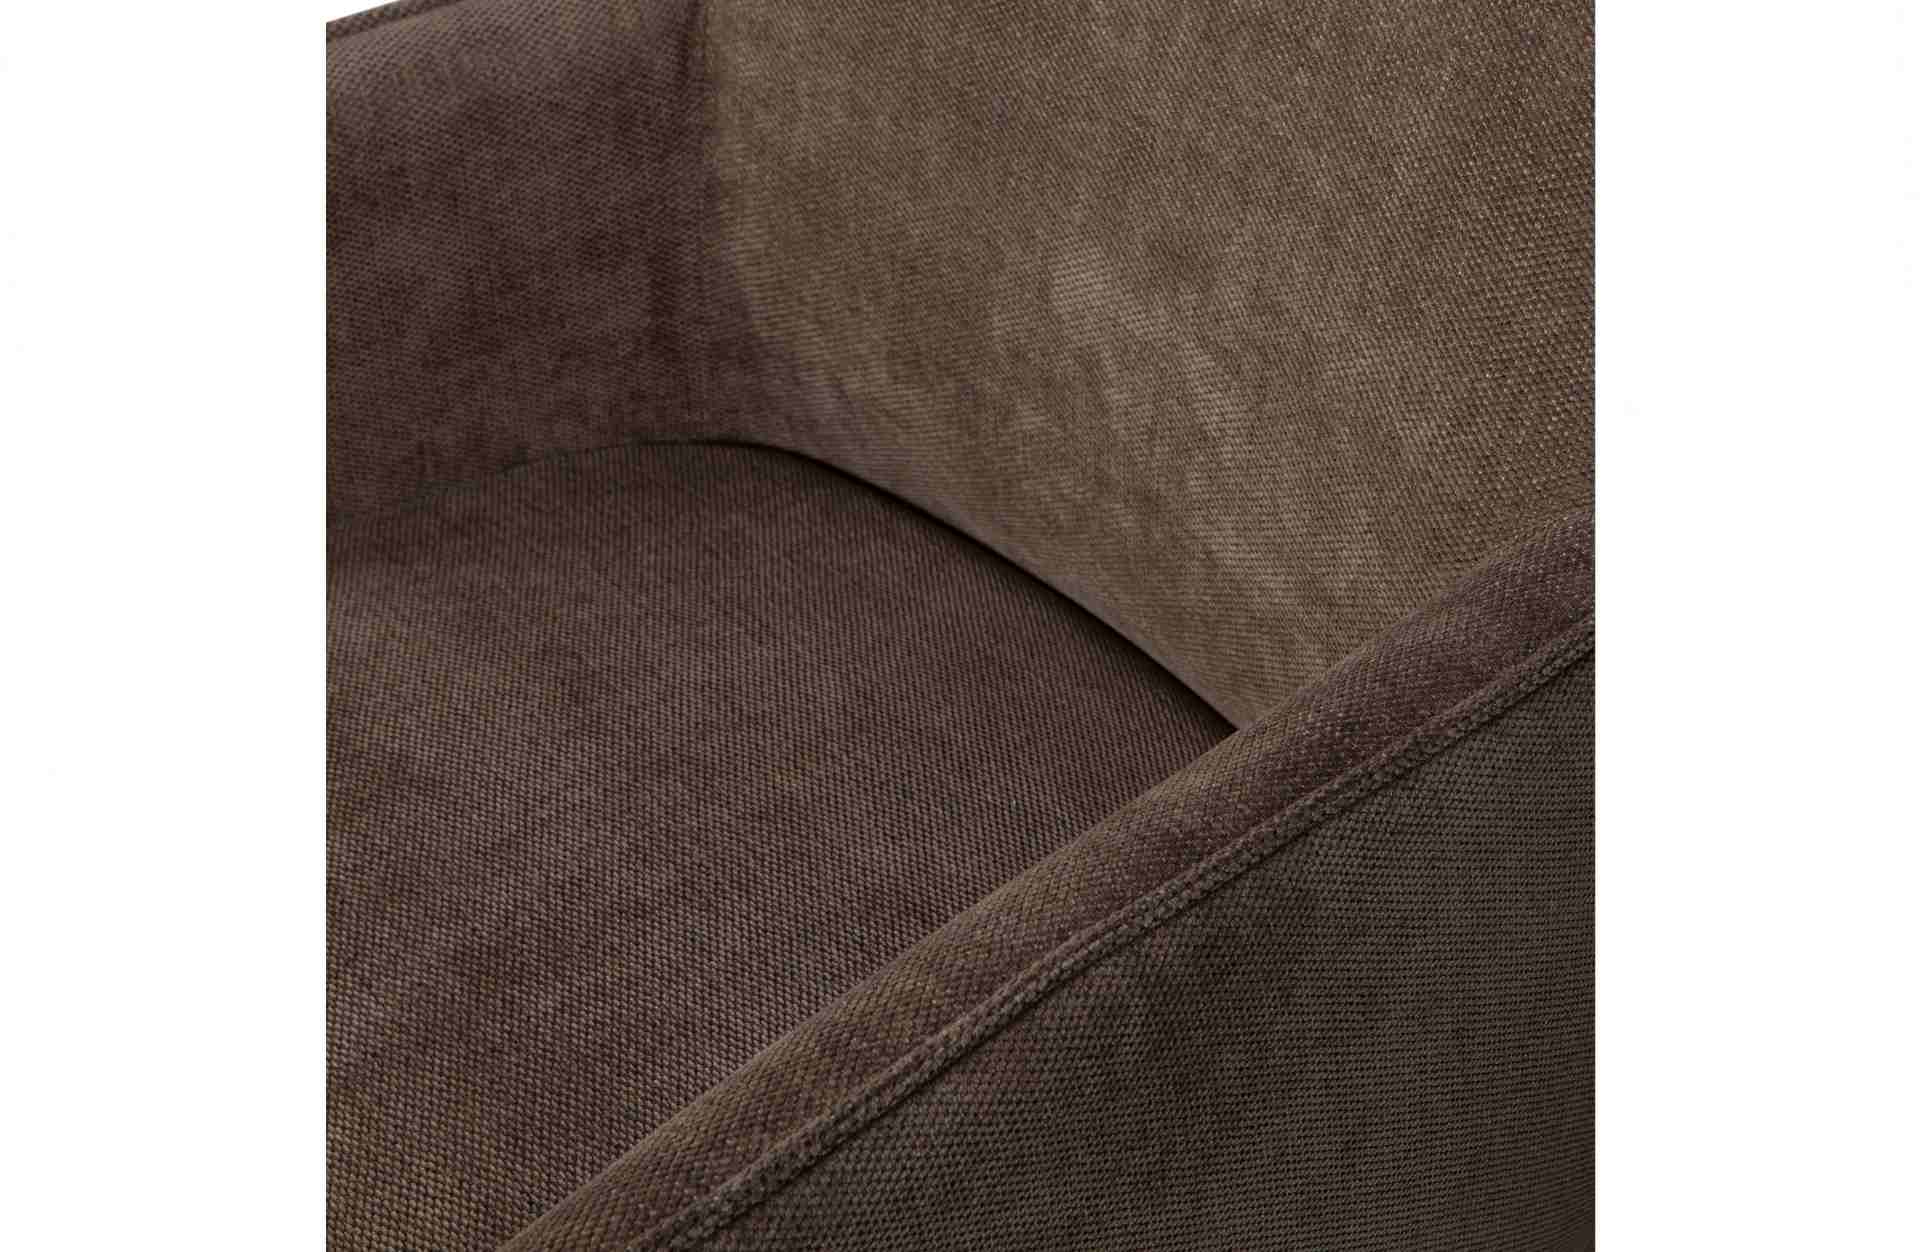 Der Esszimmerstuhl Ezra überzeugt mit seinem modernen Design. Gefertigt wurde er aus Kunstfasern, welche einen braunen Farbton besitzen. Das Gestell ist aus Metall und hat eine schwarze Farbe. Die Sitzhöhe beträgt 53 cm.